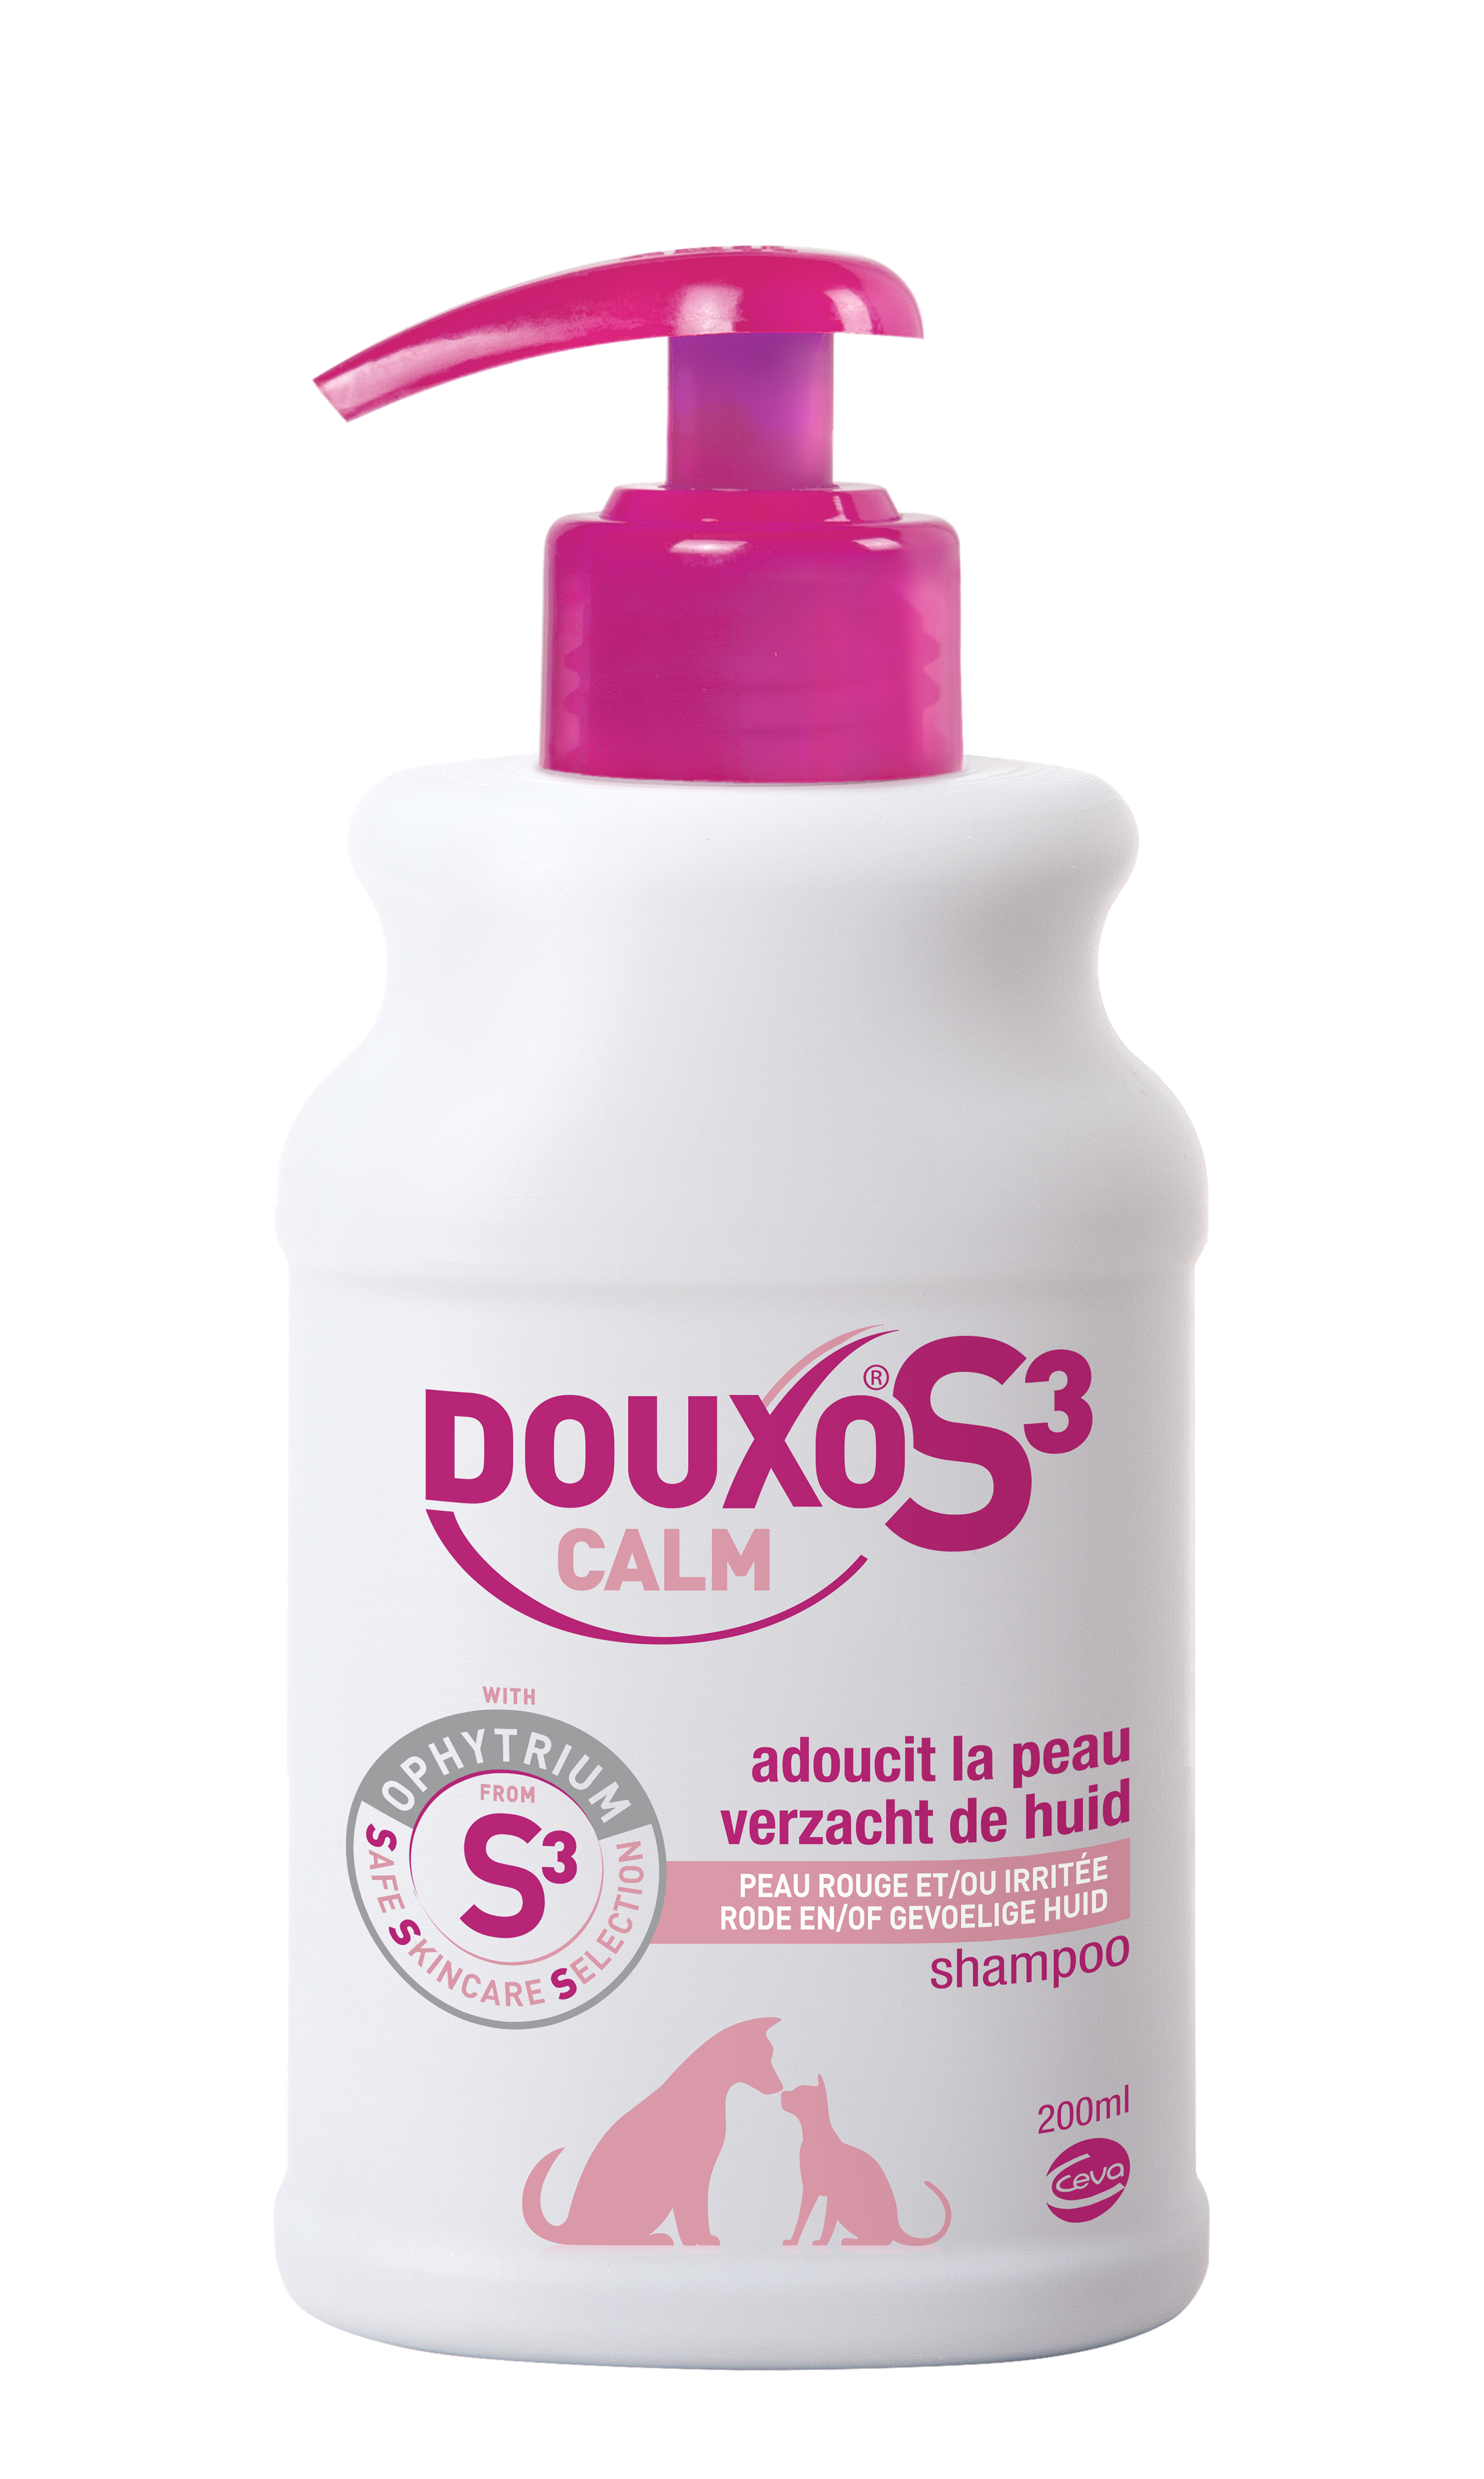 shampoo / Calm / DOUXO® product overzicht /